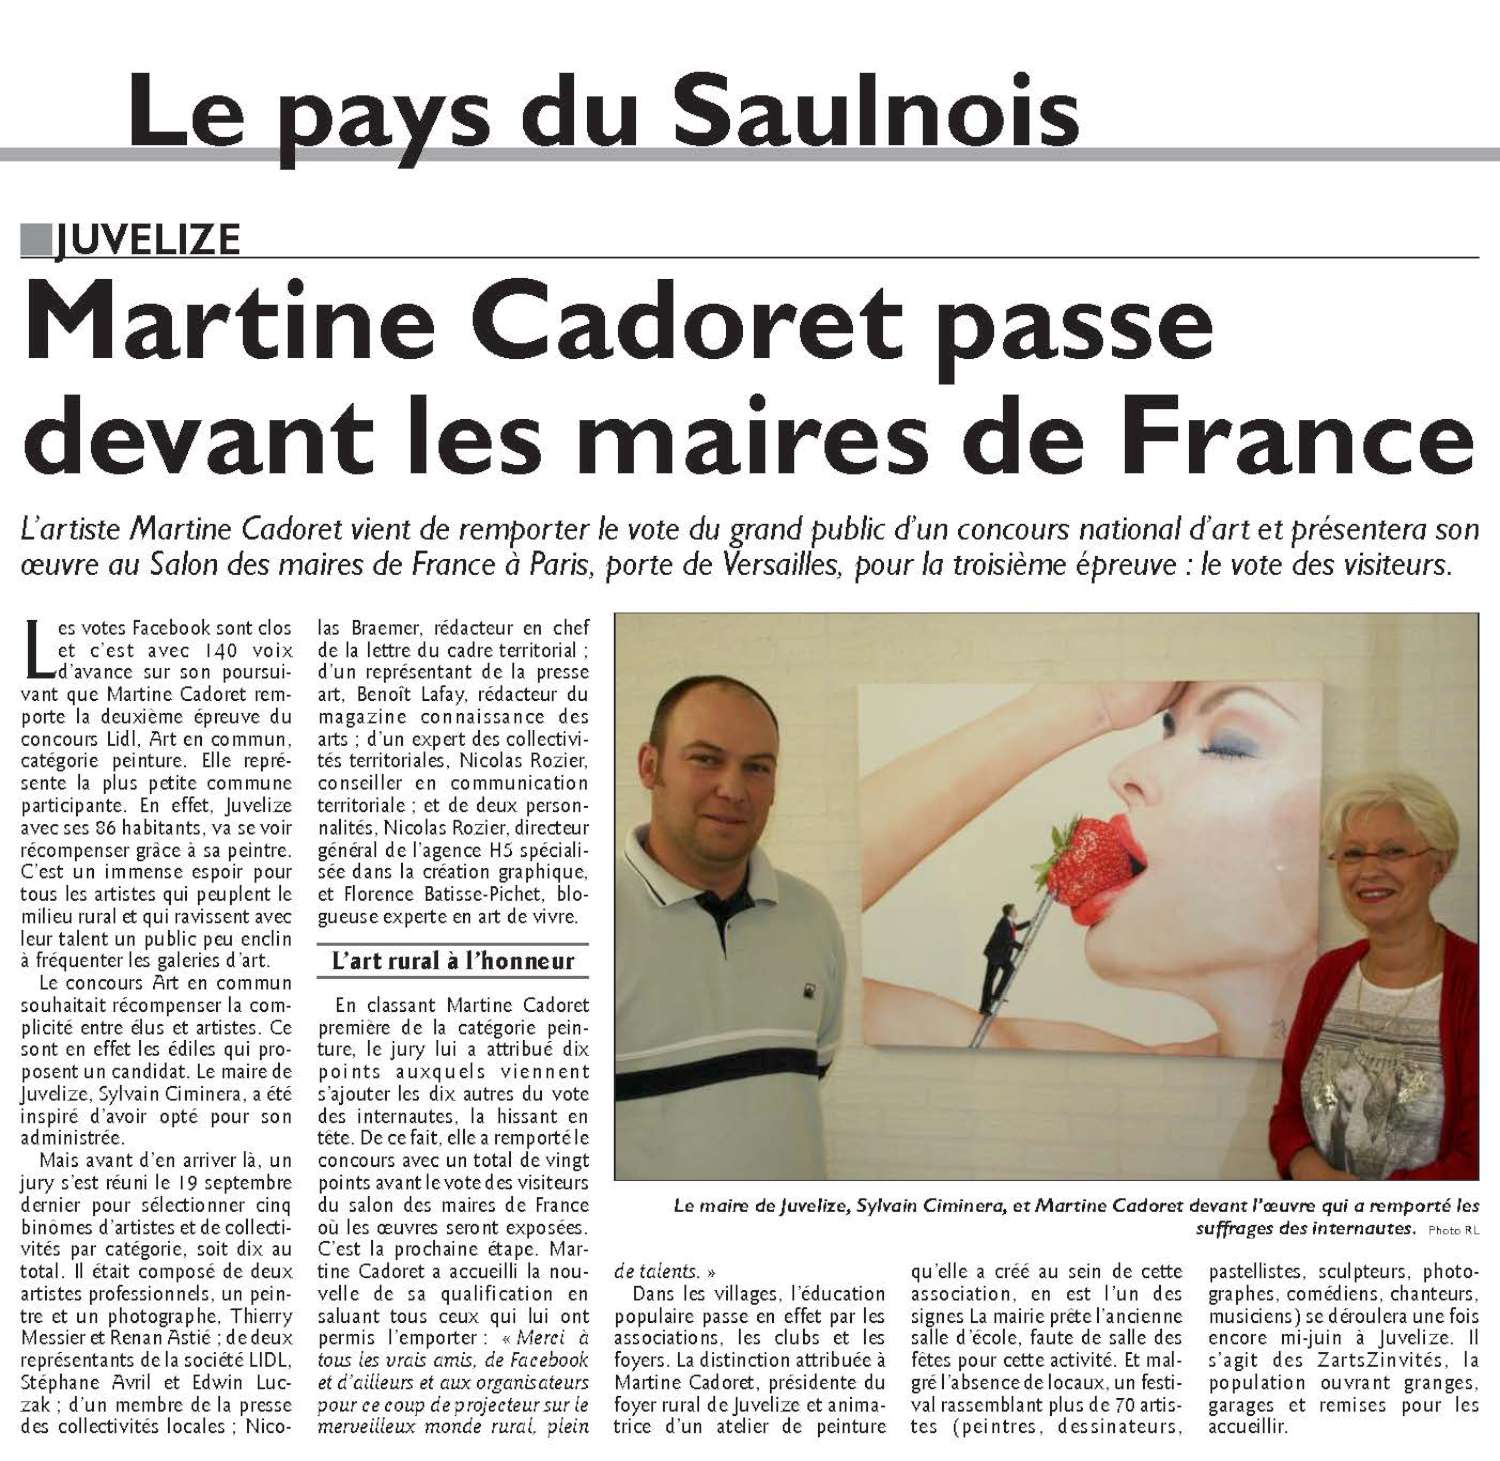 PDF-Page 24-edition-de-sarrebourg 20141105-1500